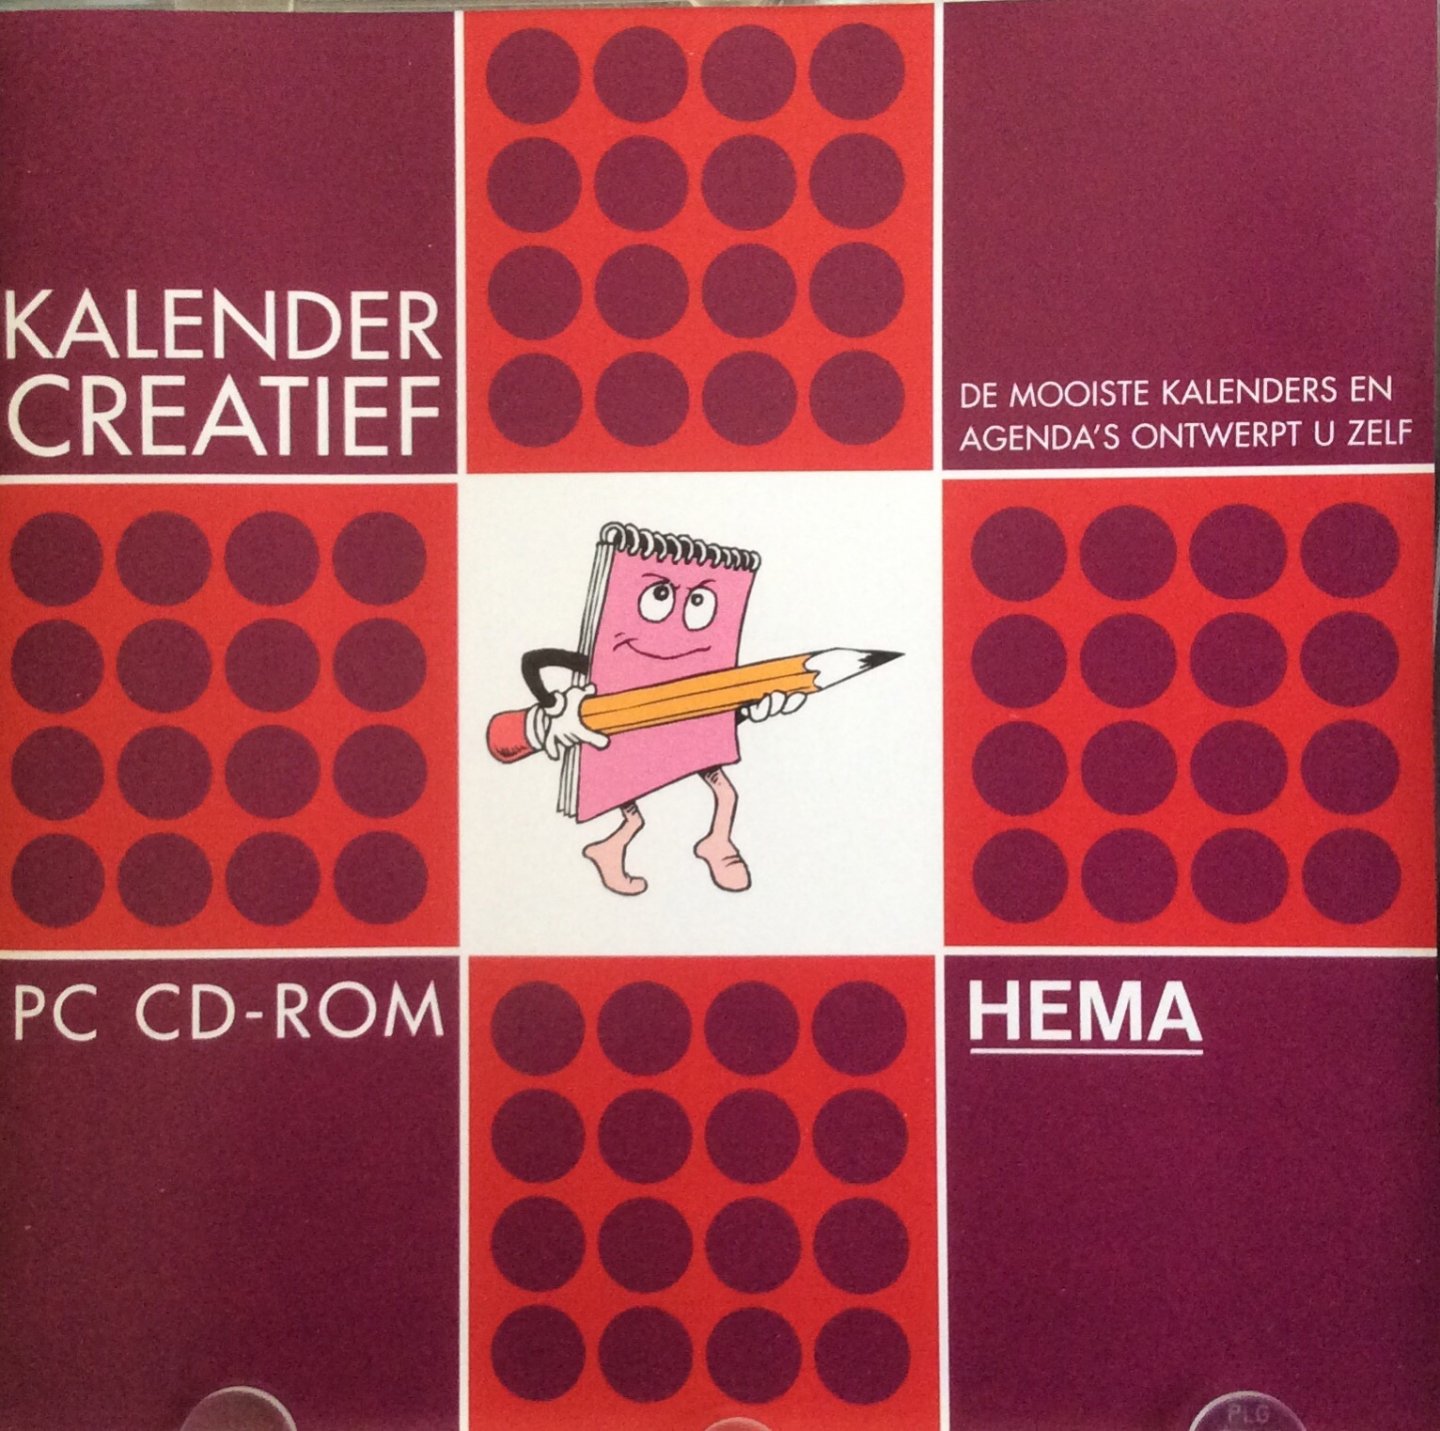 Hema - Kalender Creatief. De mooiste kalenders en agenda's ontwerpt u zelf